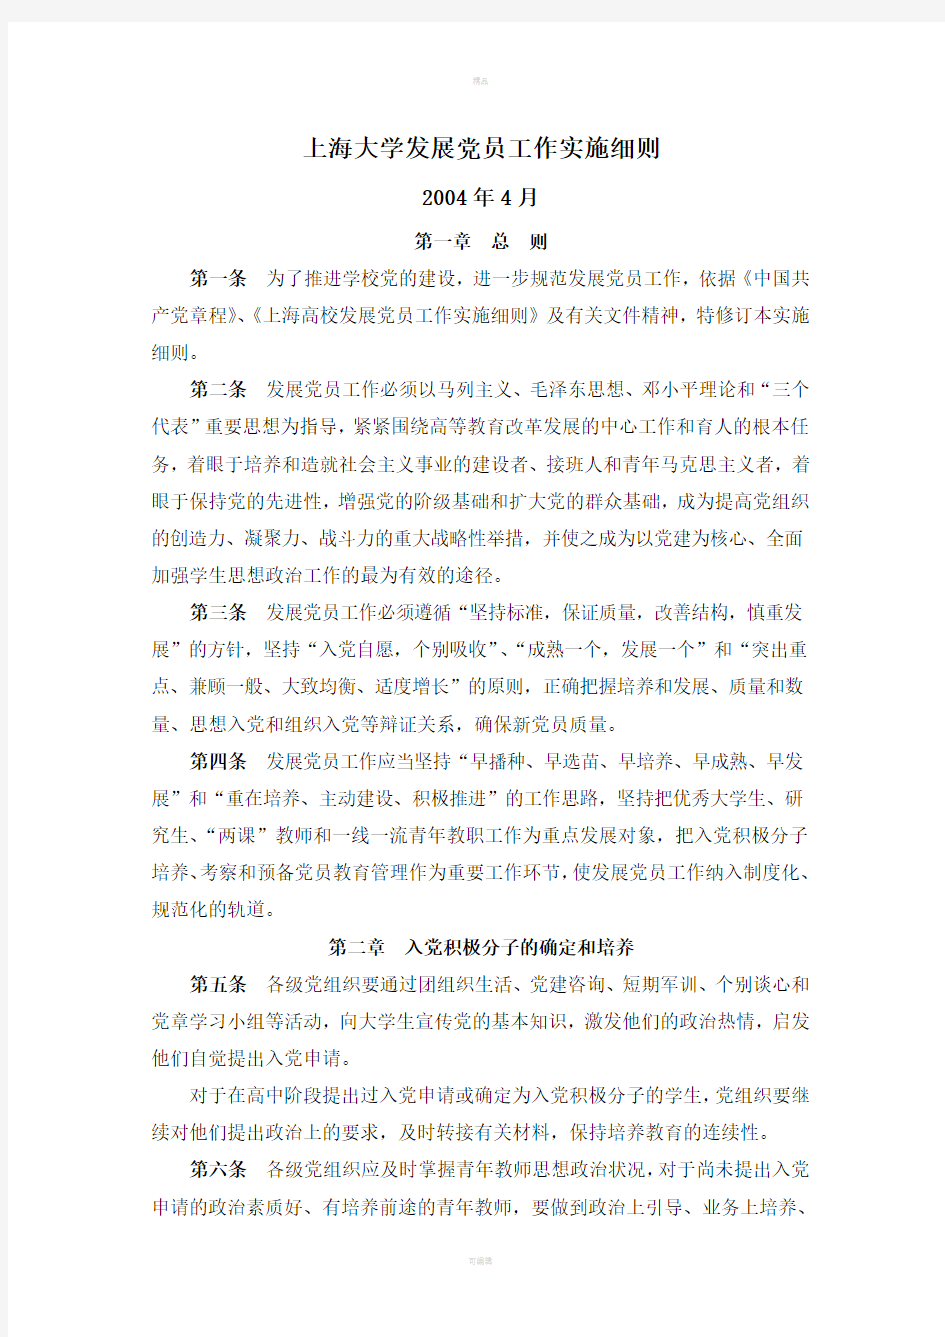 上海大学发展党员工作实施细则